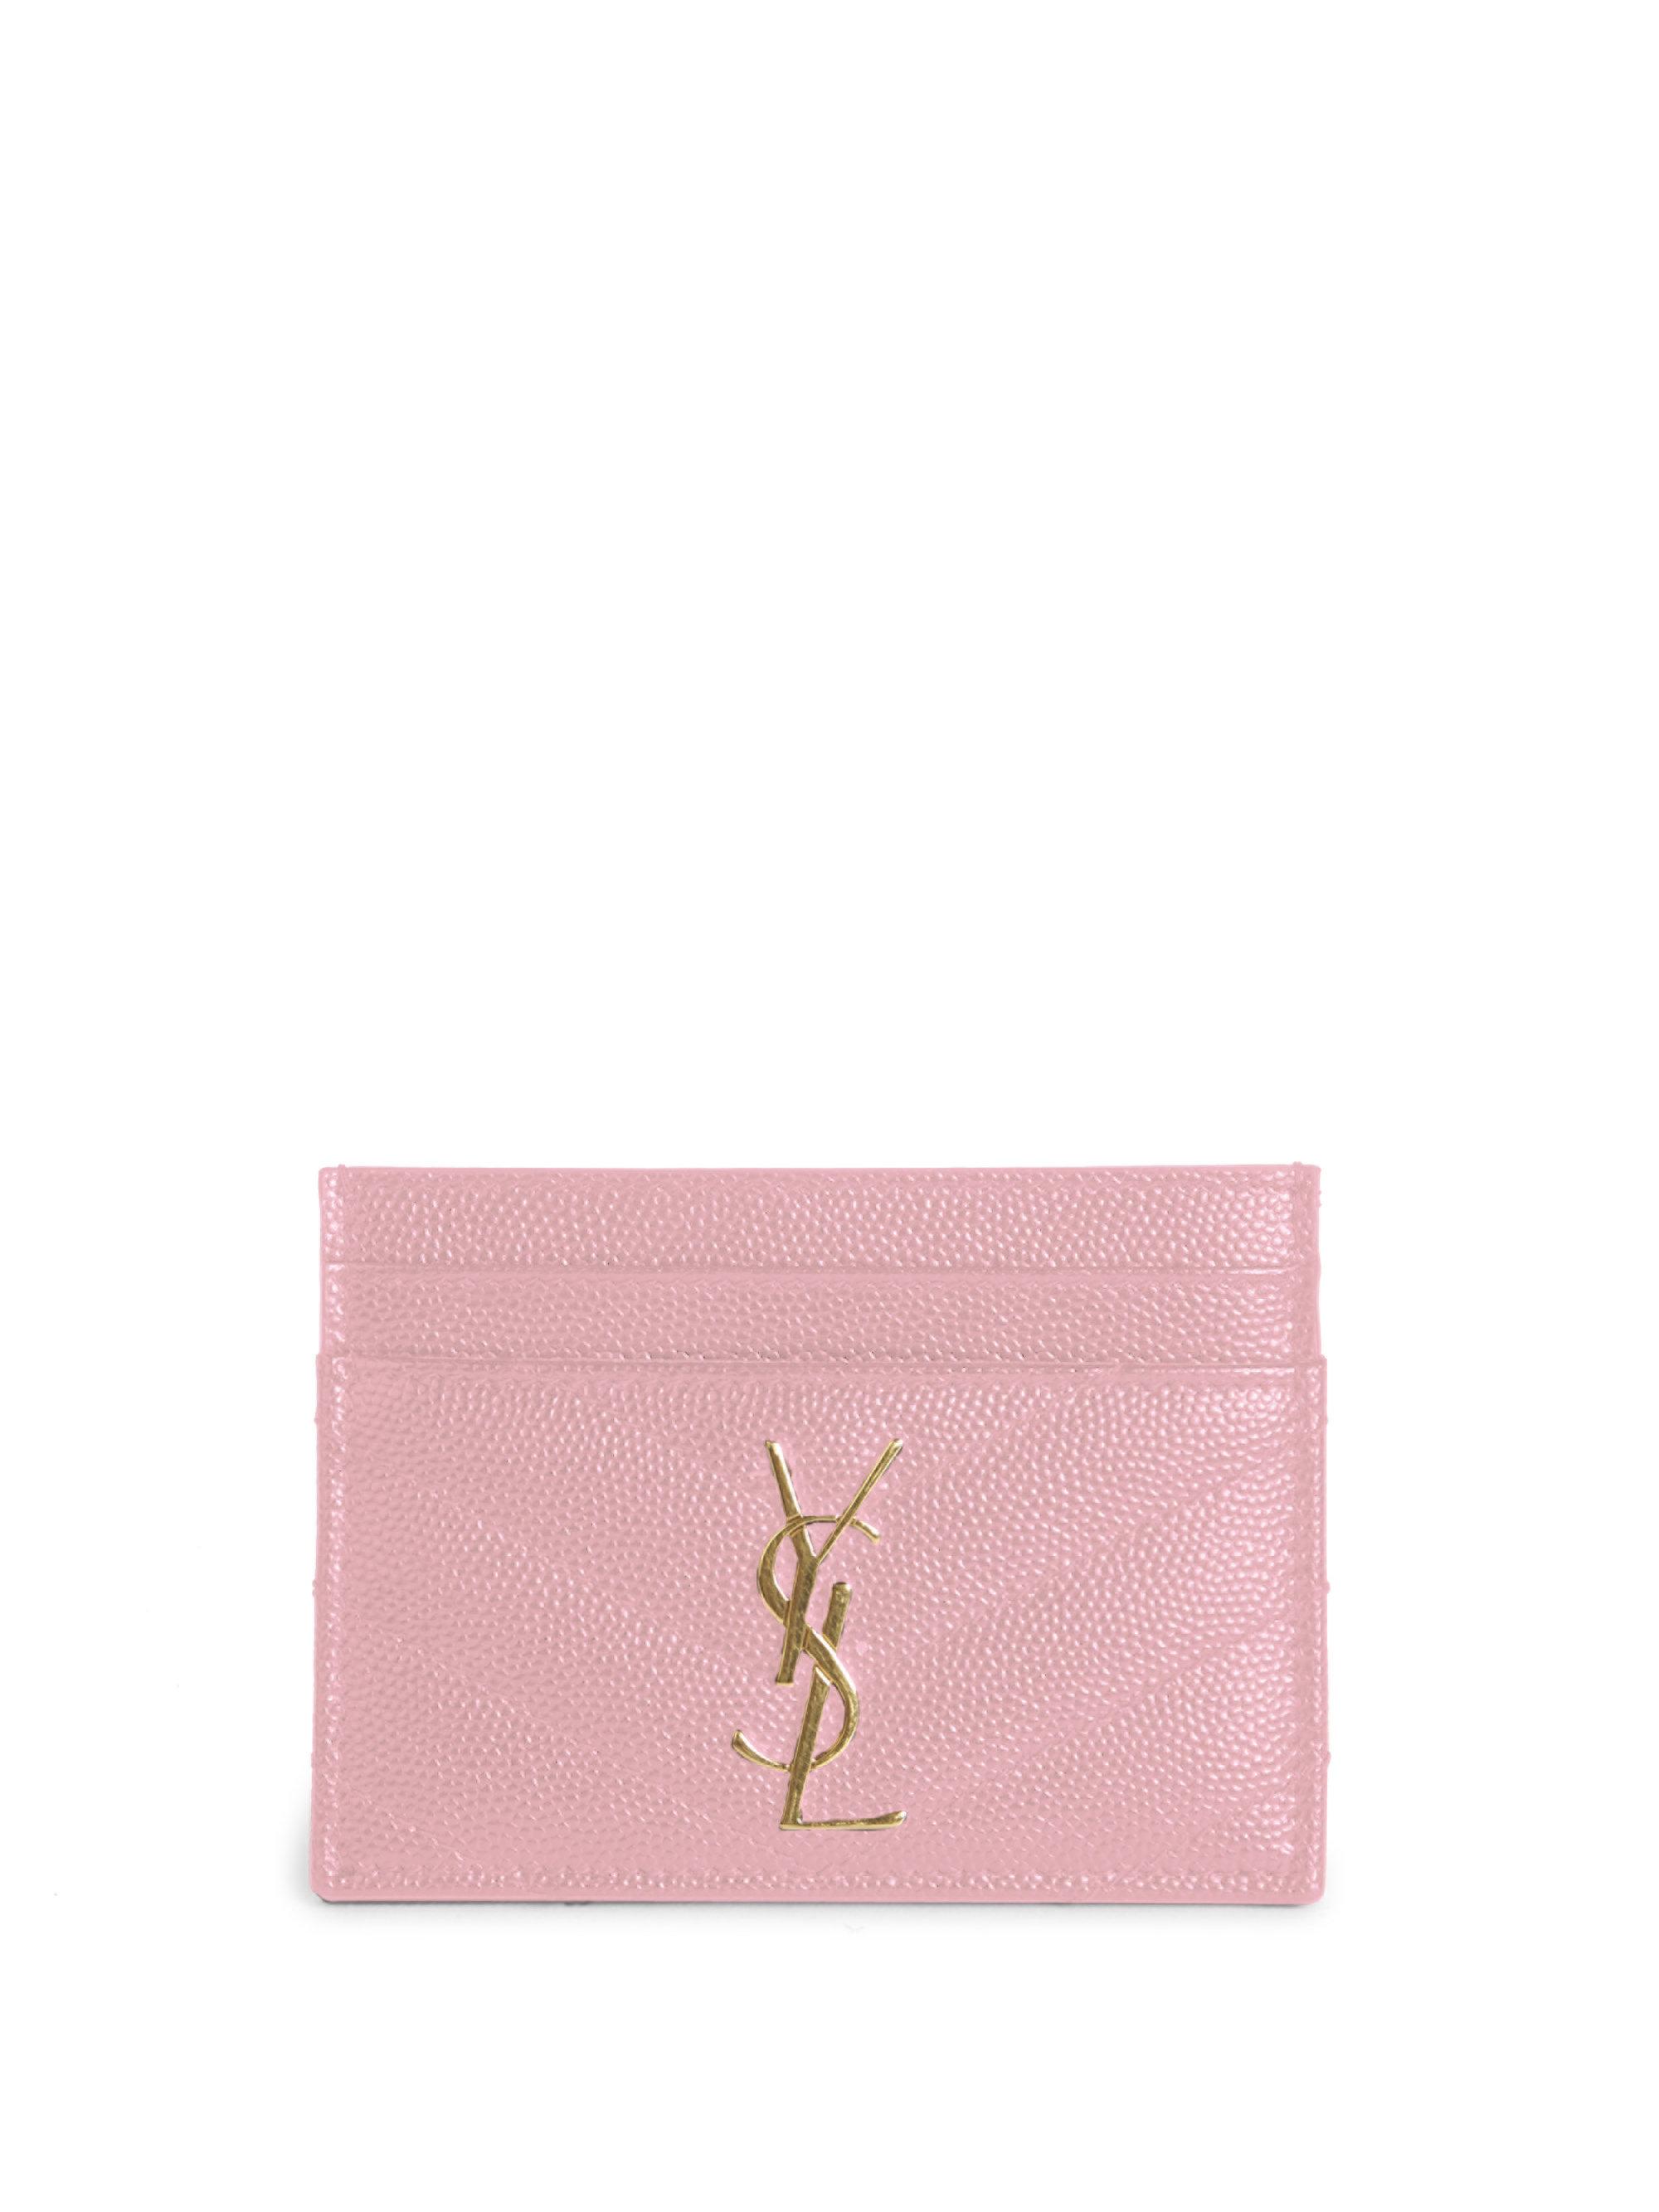 Saint Laurent Monogram Matelassé Leather Card Case in Pink | Lyst